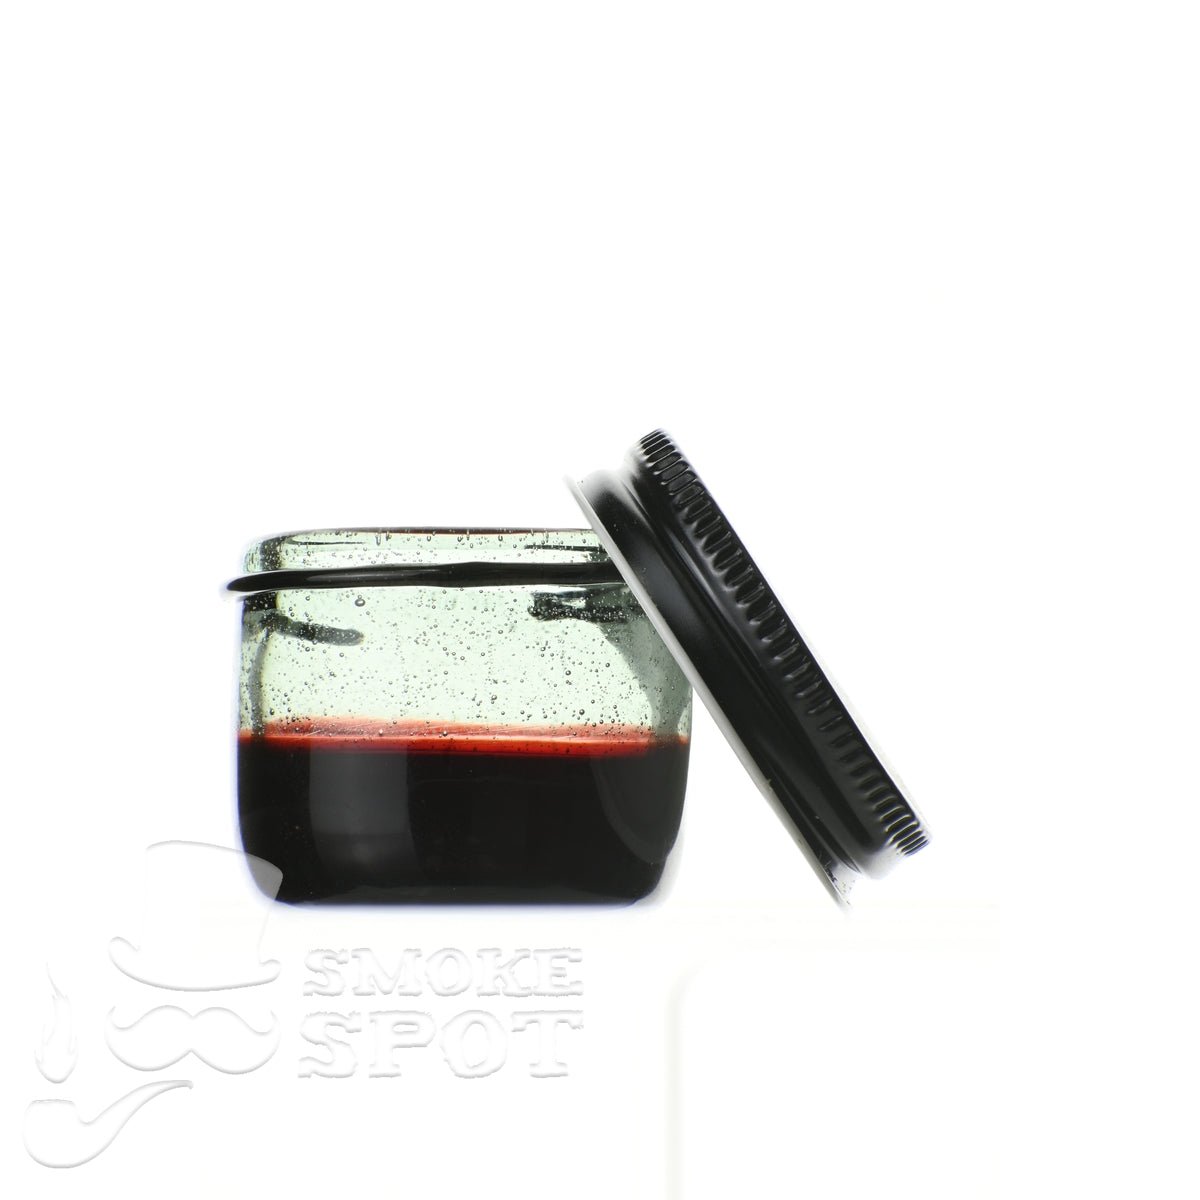 Glass enthuastic jar 103 - Smoke Spot Smoke Shop